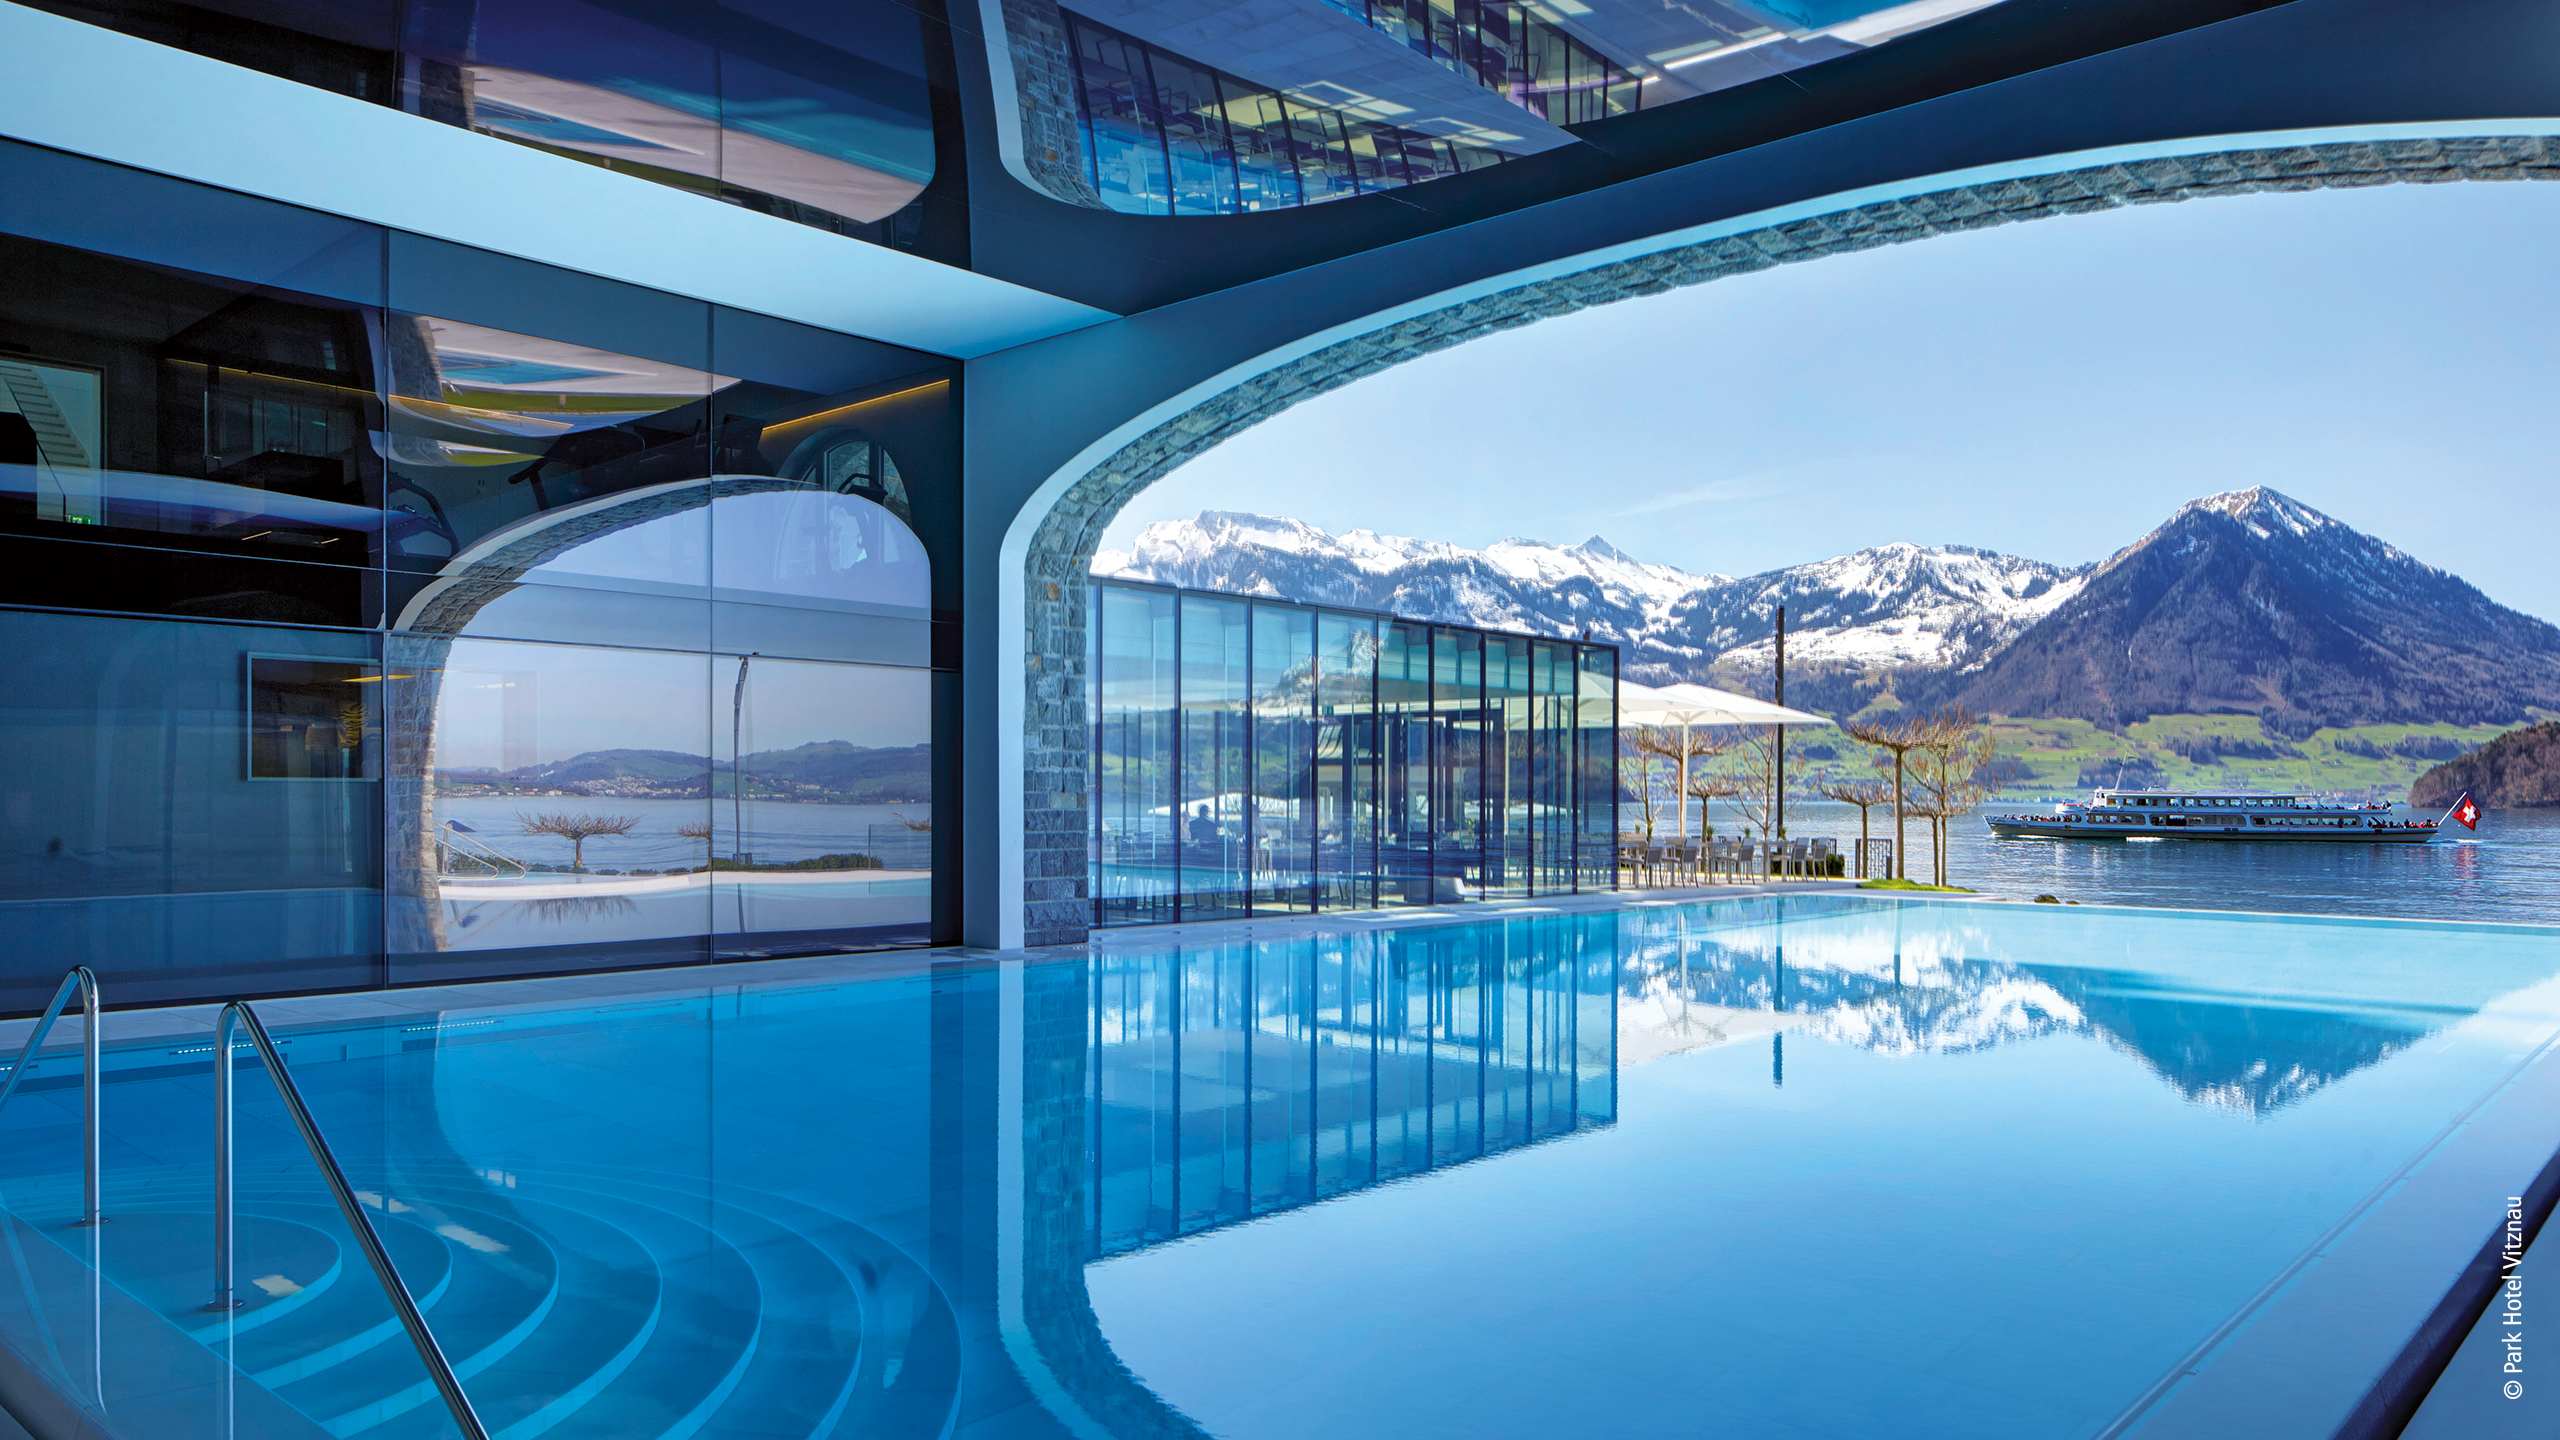 Direkt am Ufer des Vierwaldstättersees in der Schweiz untergebracht, verbindet das Park Hotel Vitznau historisches Ambiente mit der Ausstattung und dem Angebot eines modernen 5-Sterne-Luxushotels.  